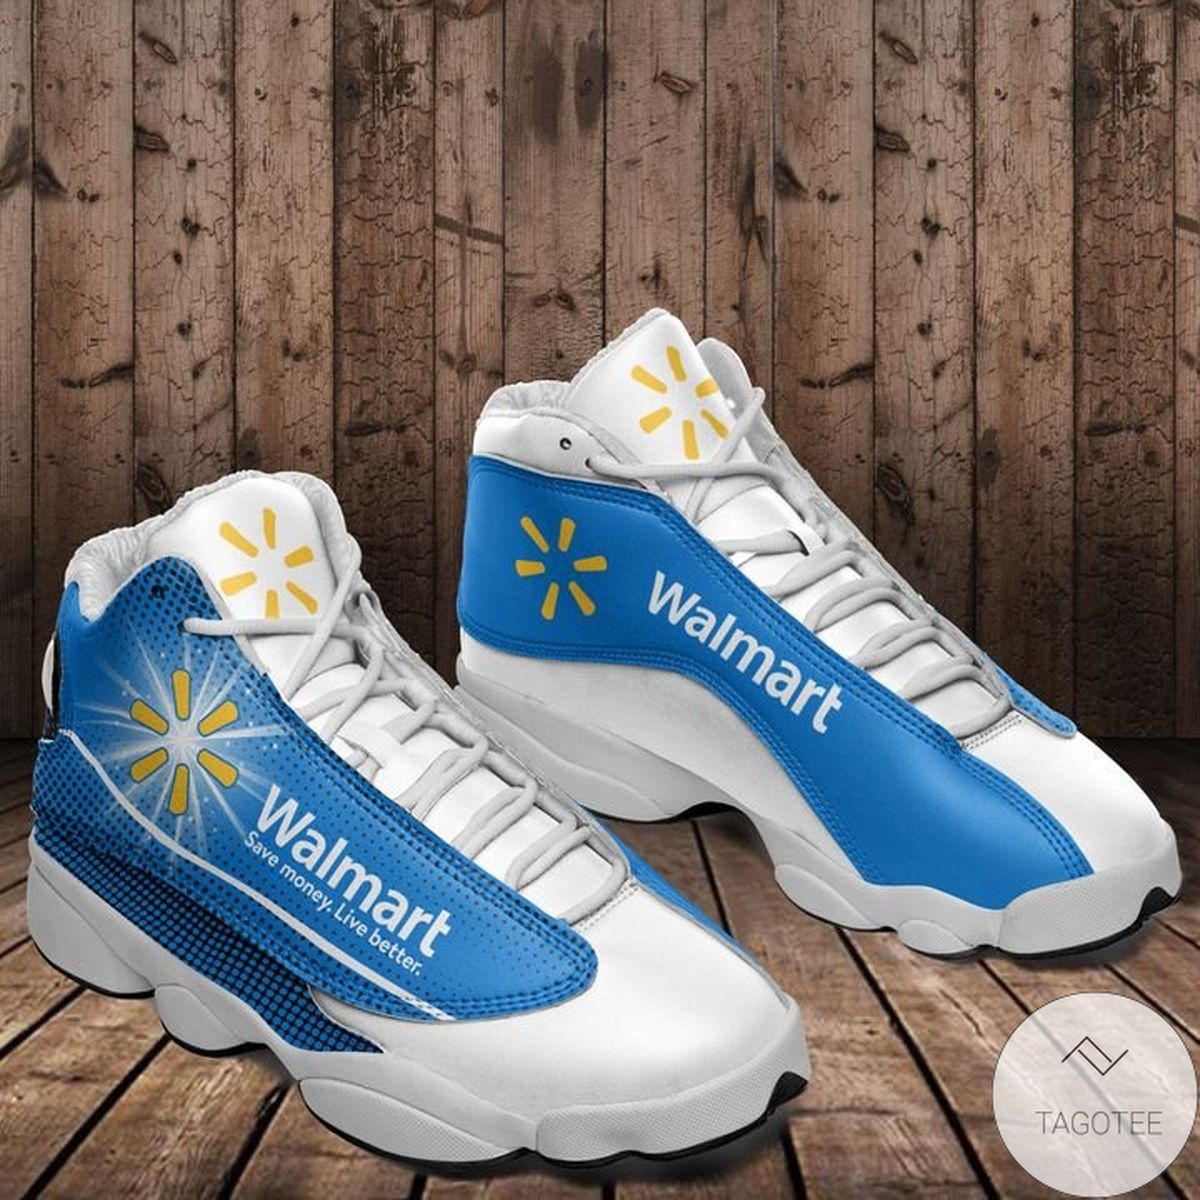 Walmart Air Jordan 13 Shoes